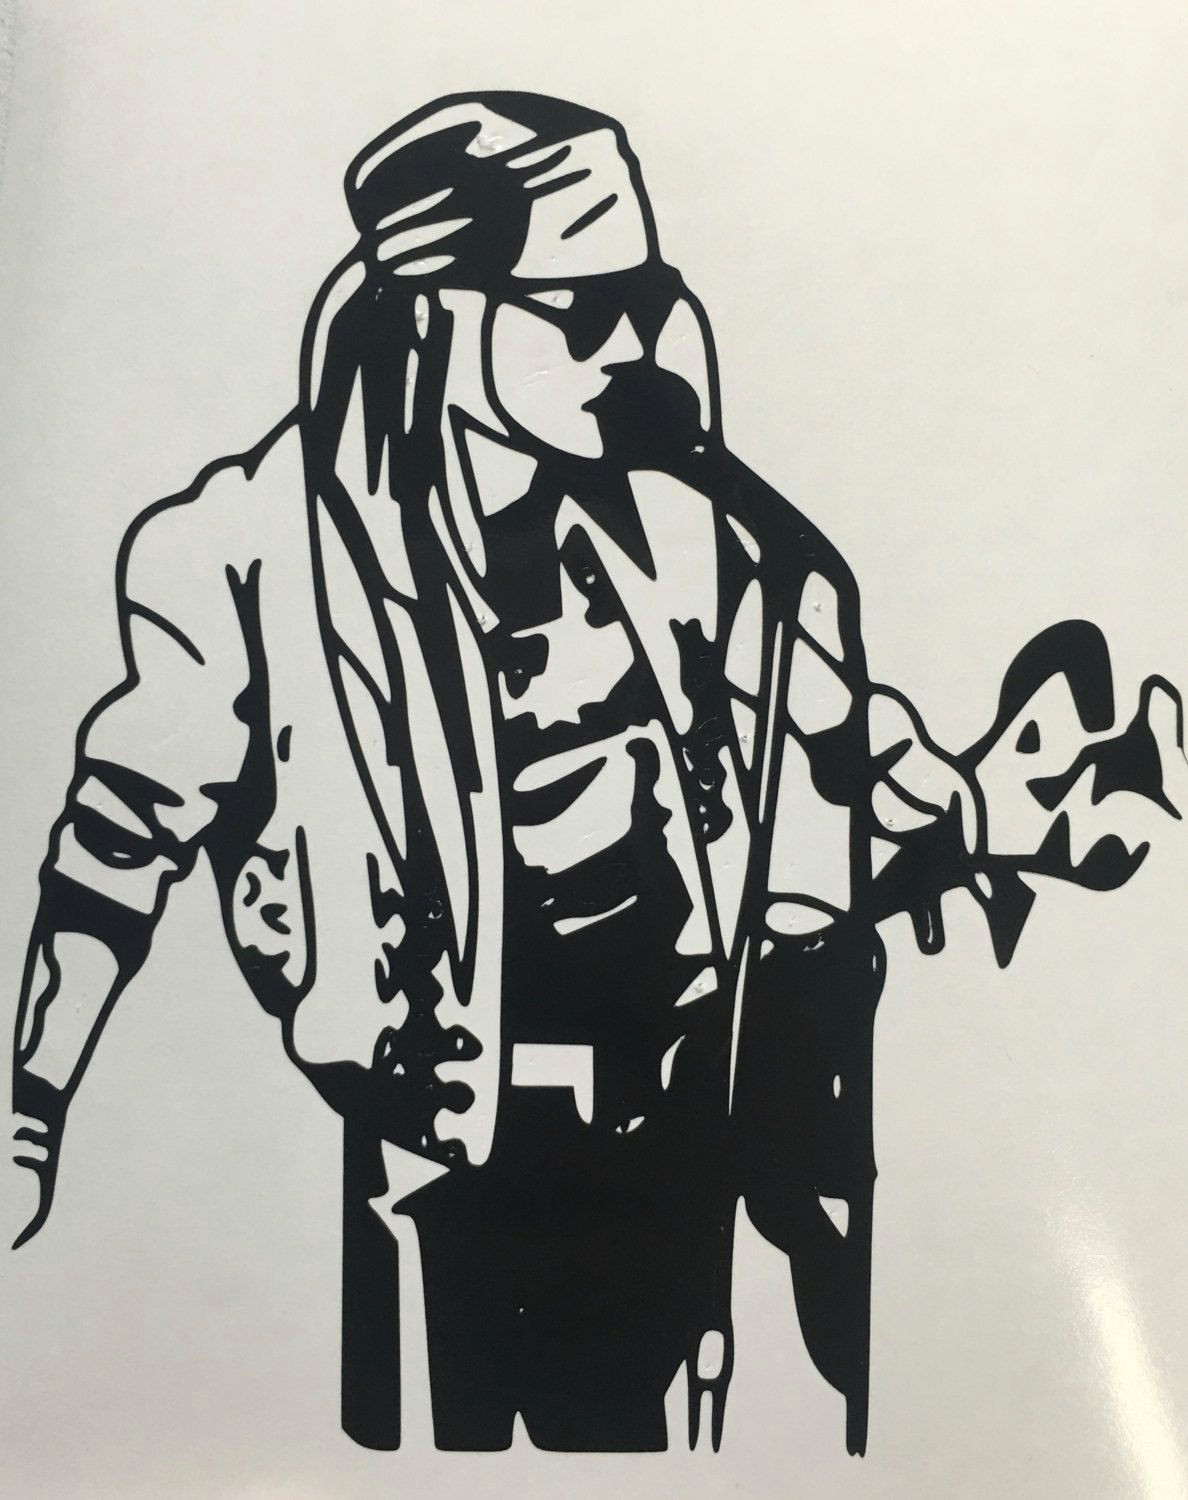 Drawings Of Guns N Roses Guns N Roses Inspired Axl Singing Decal by Leslisdesigns On Etsy